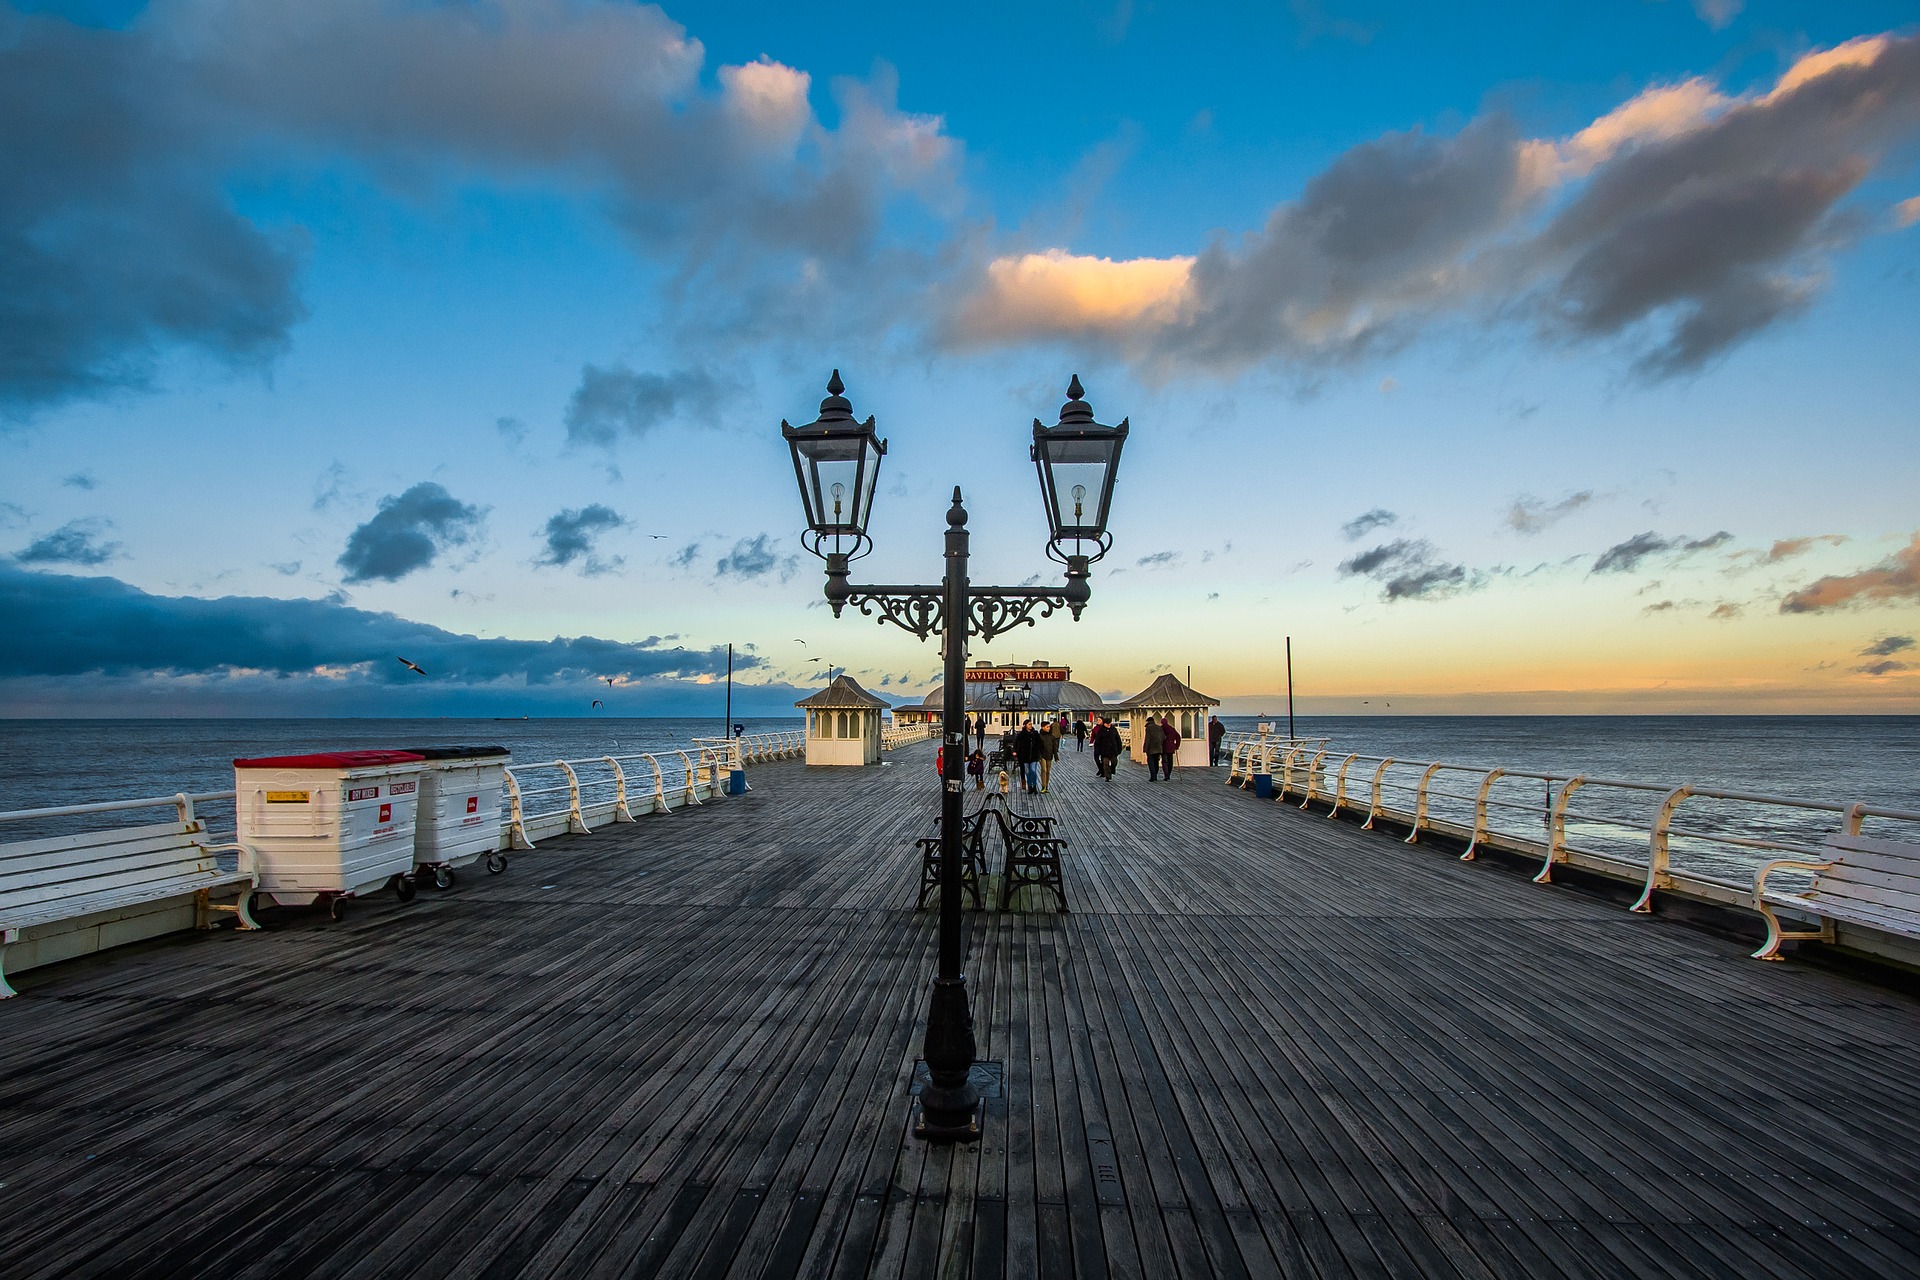 Cromer Pier © Diego Torres | pixabay.com